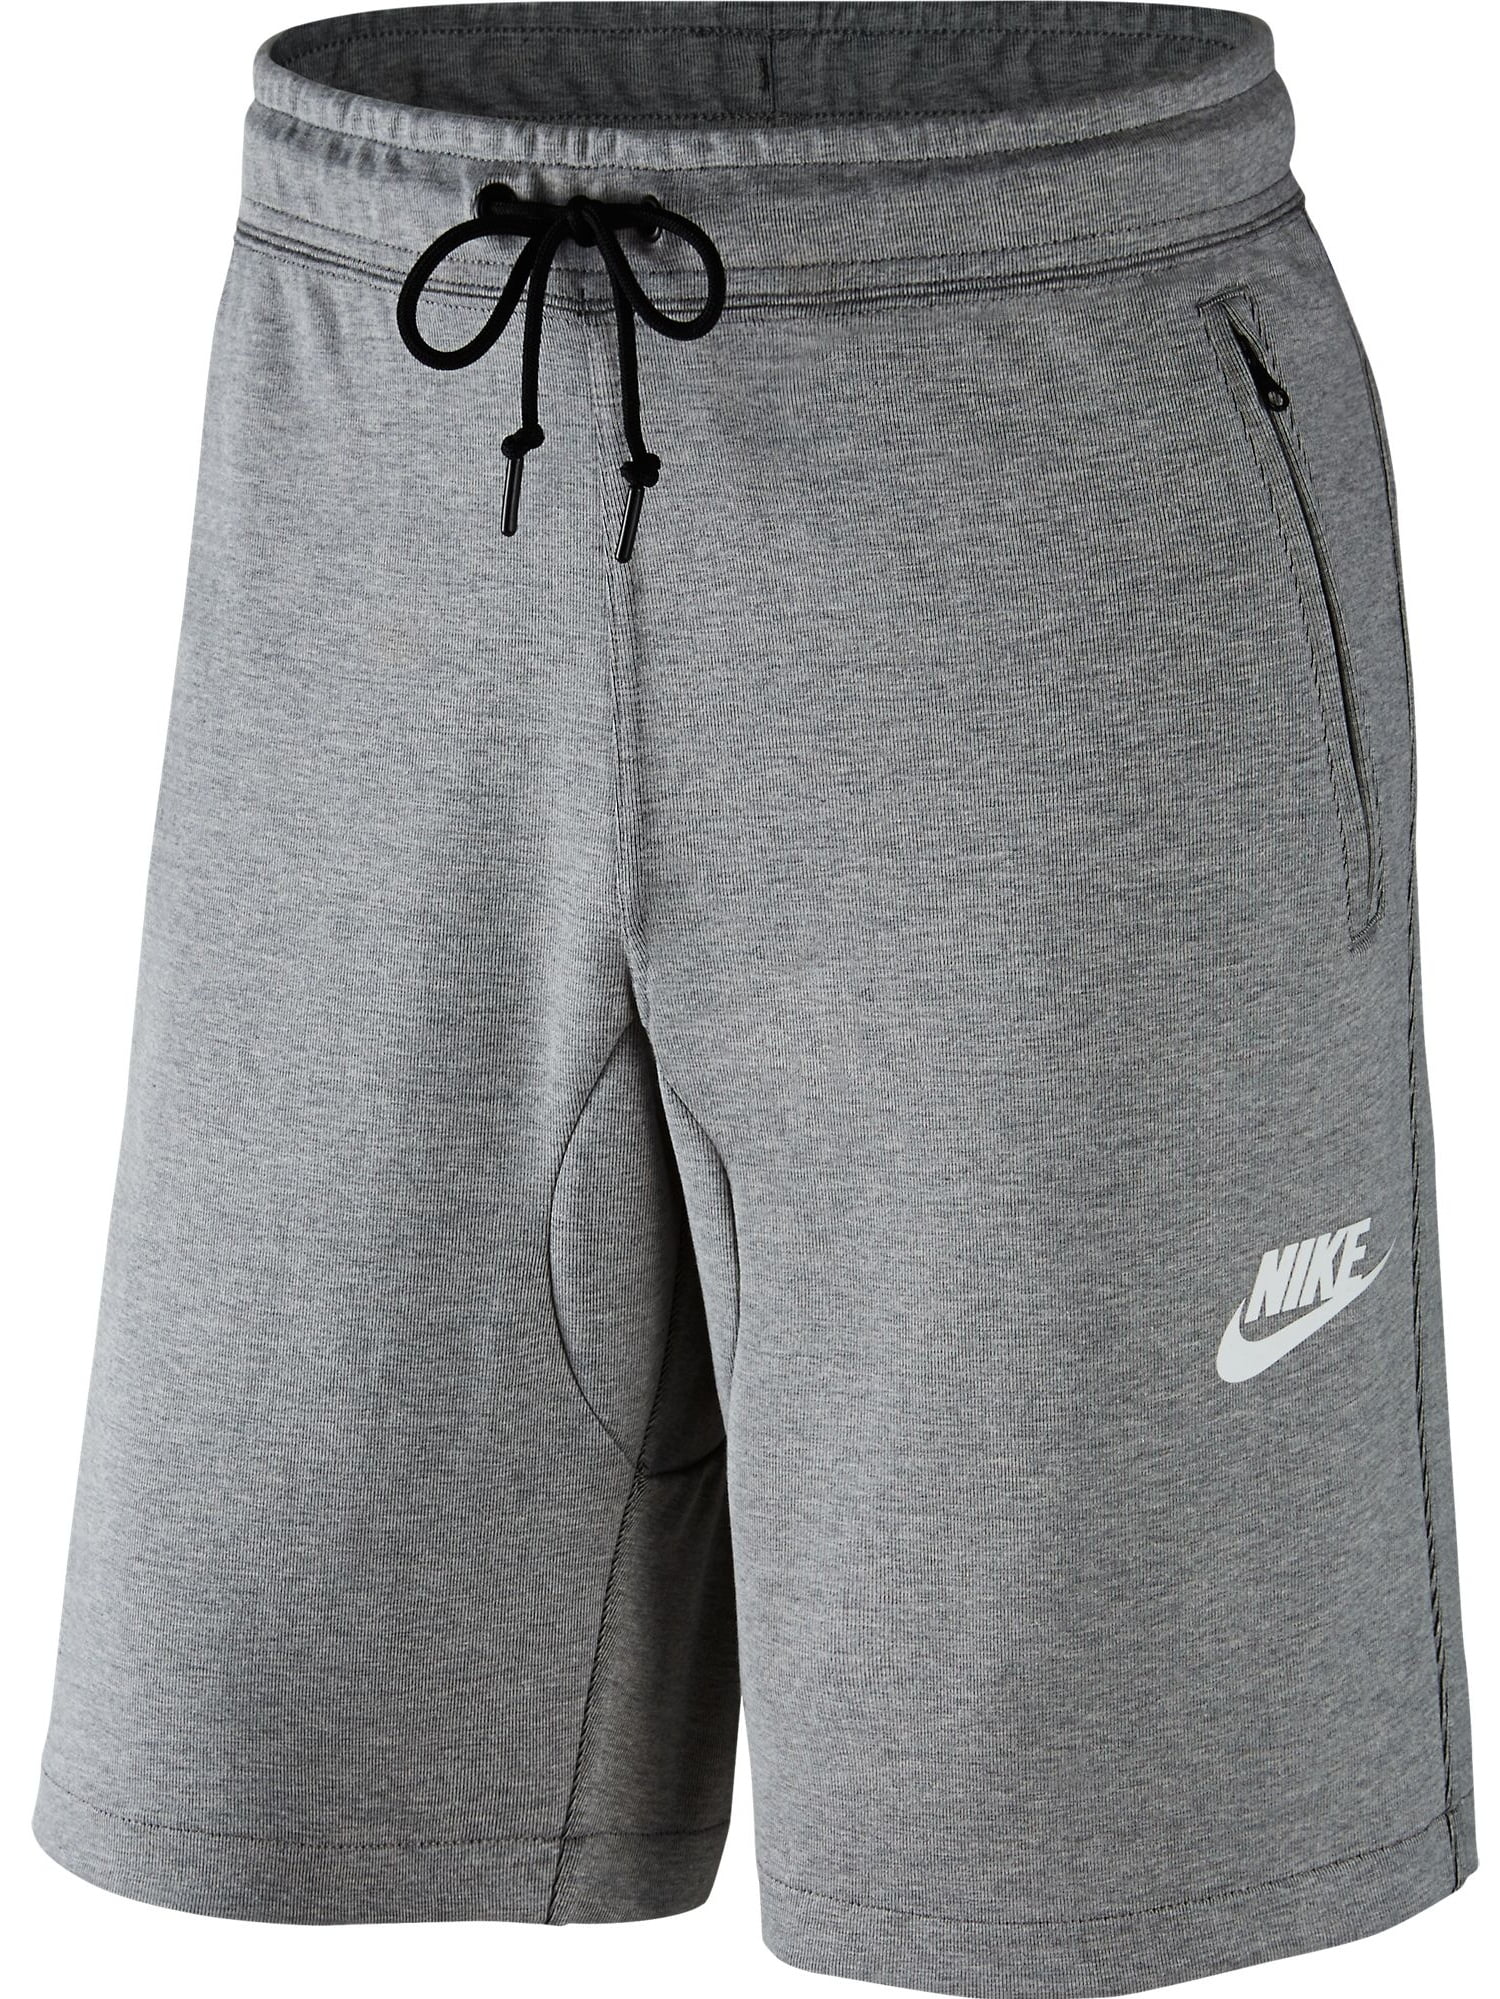 Esperanzado vecino En consecuencia Nike AV 15 Fleece Men's Shorts Dark Grey Heather 803672-064 - Walmart.com